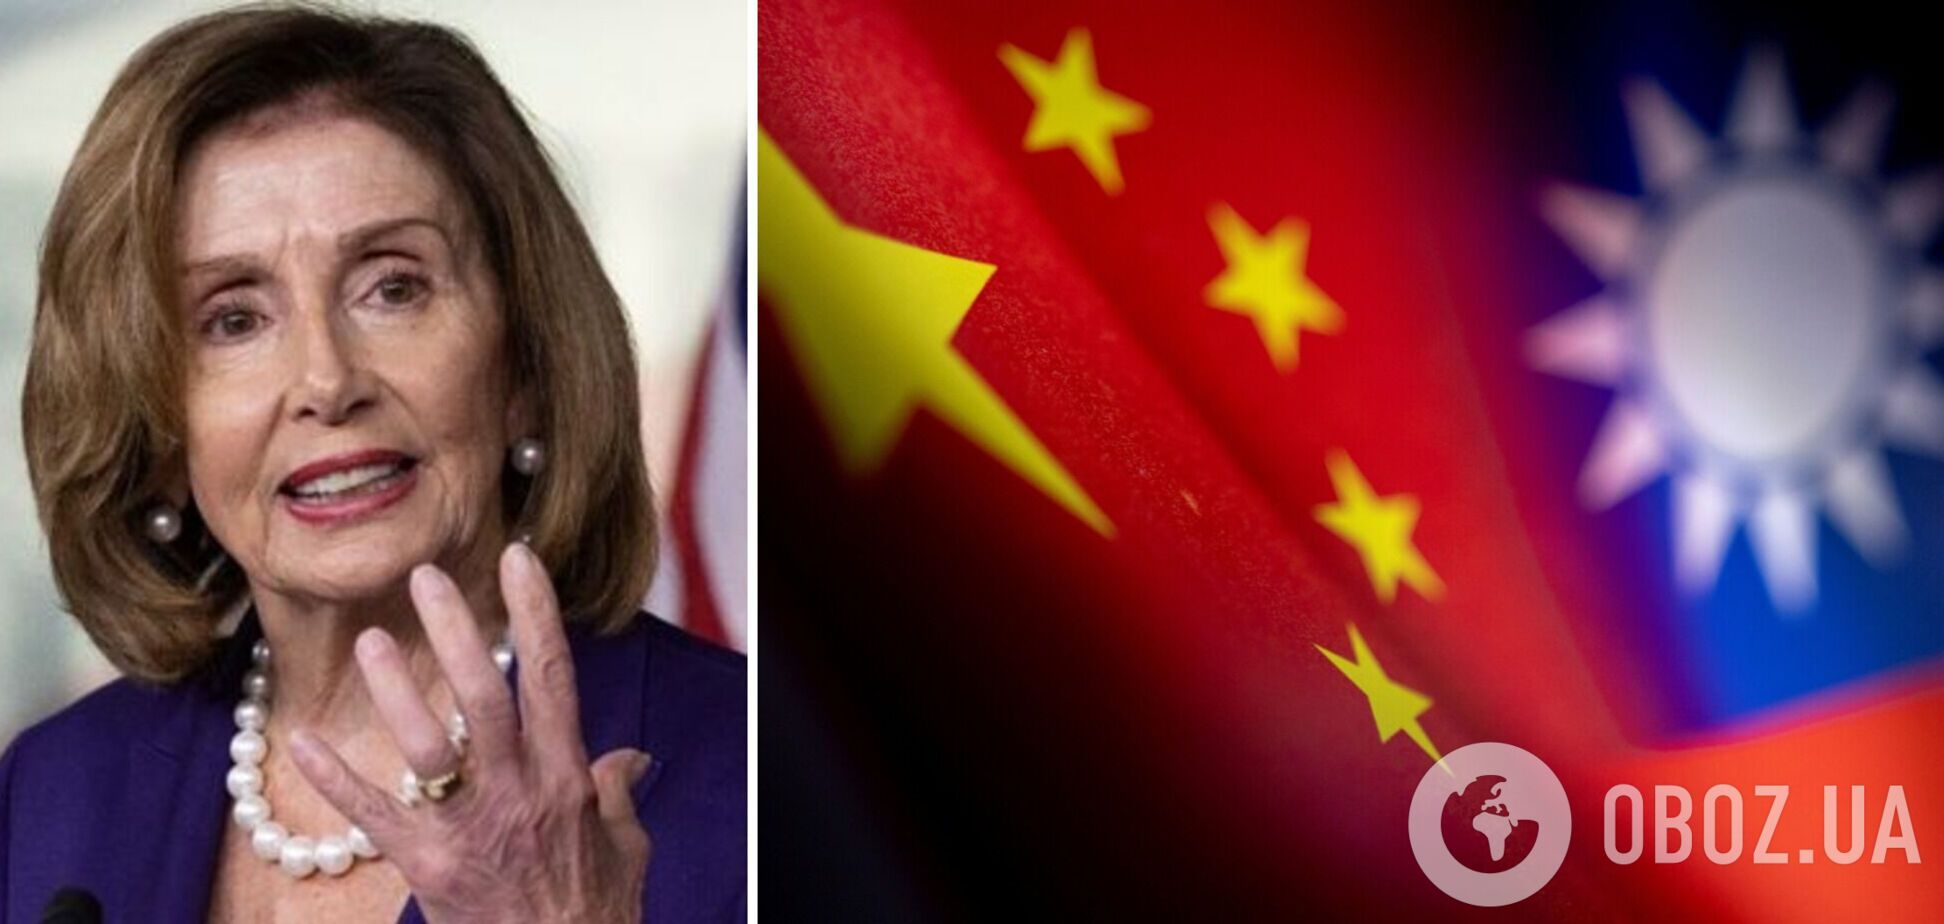 Пелоси заявила, что ее визит на Тайвань является свидетельством приверженности США поддержанию тайваньской демократии